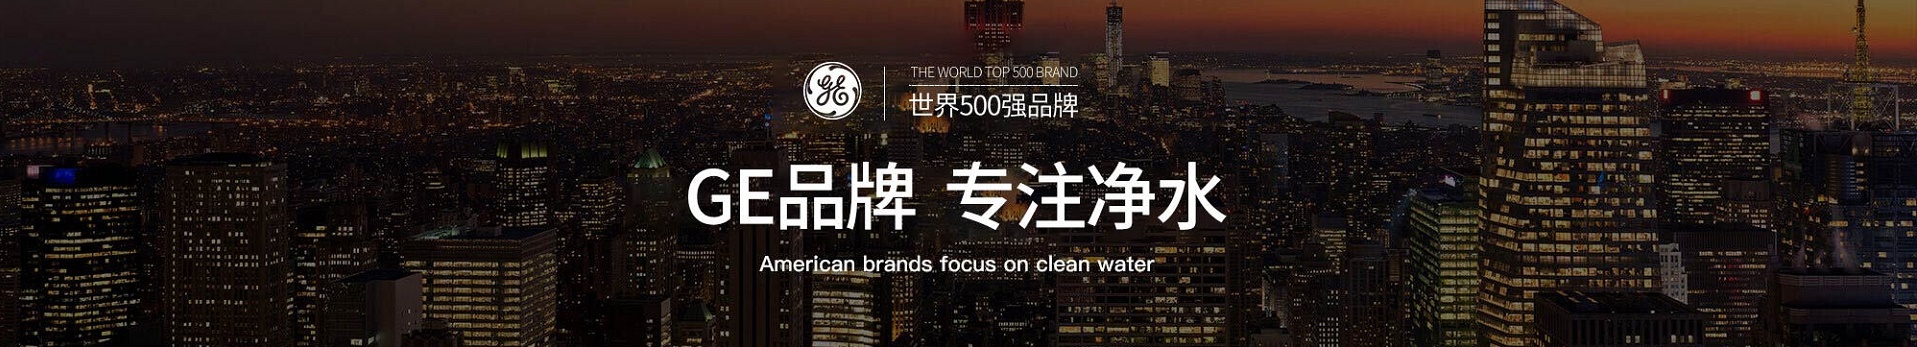 选择购买矿物质水净水器直饮机最好的品牌--GE